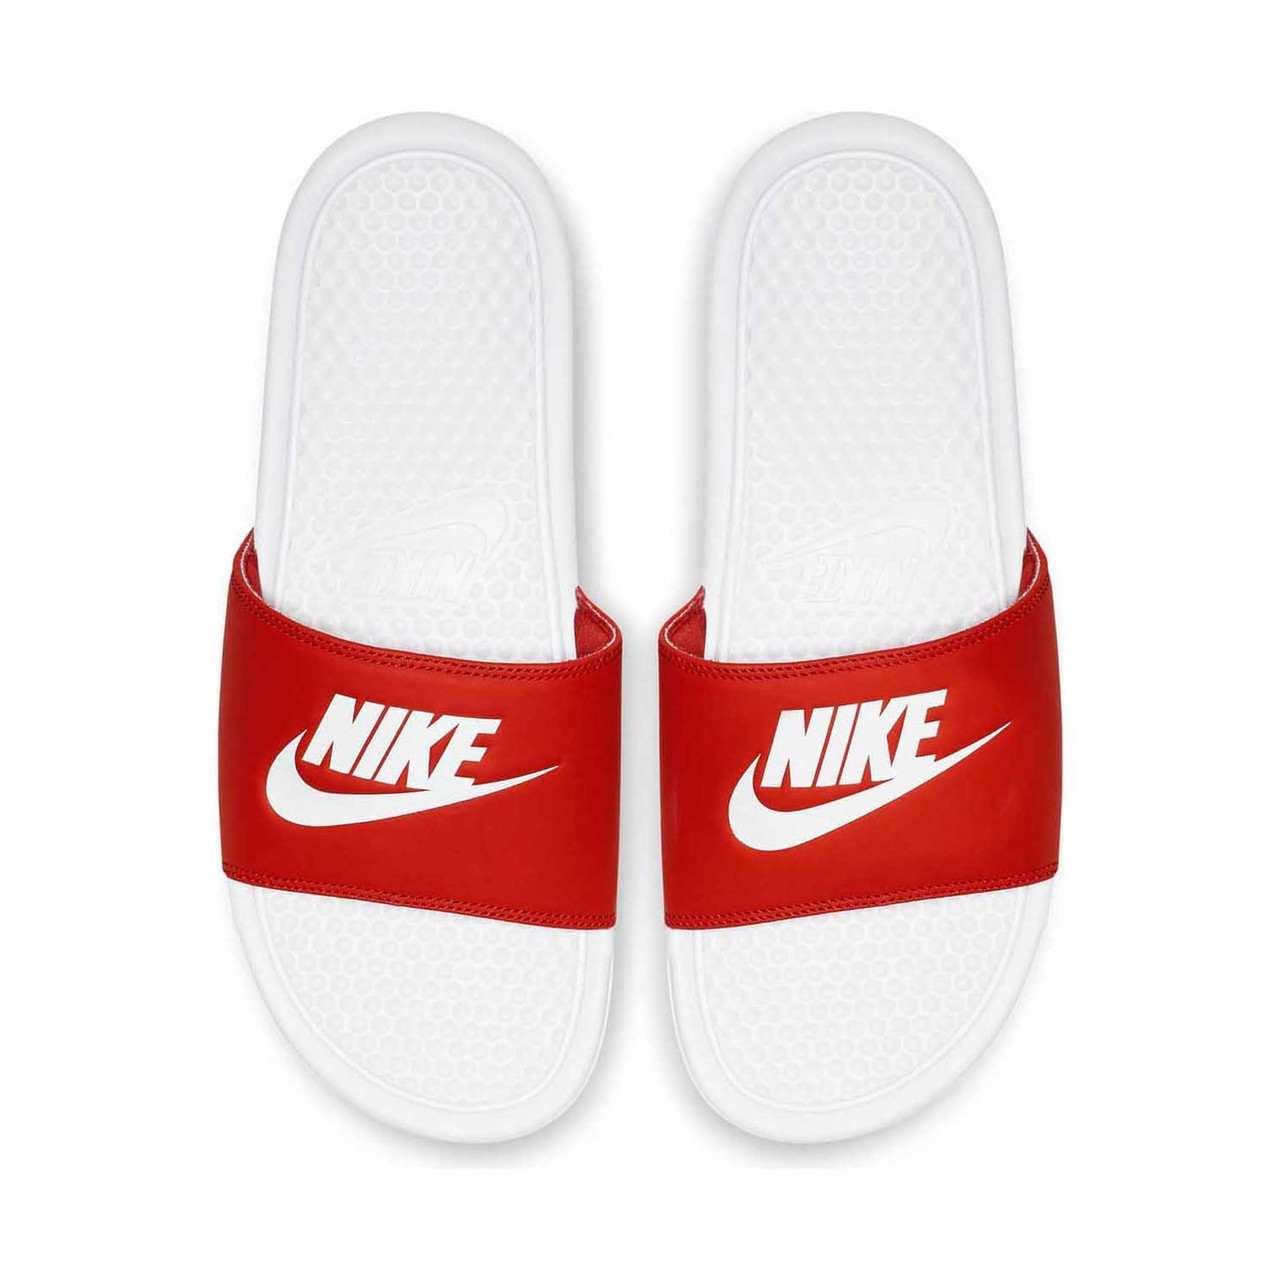 Nike Benassi Оригинальные оранжевые белые шлепанцы тапочки вьетнамки большие размеры 343880-090 EU 49.5 (33 см), Оранжевый